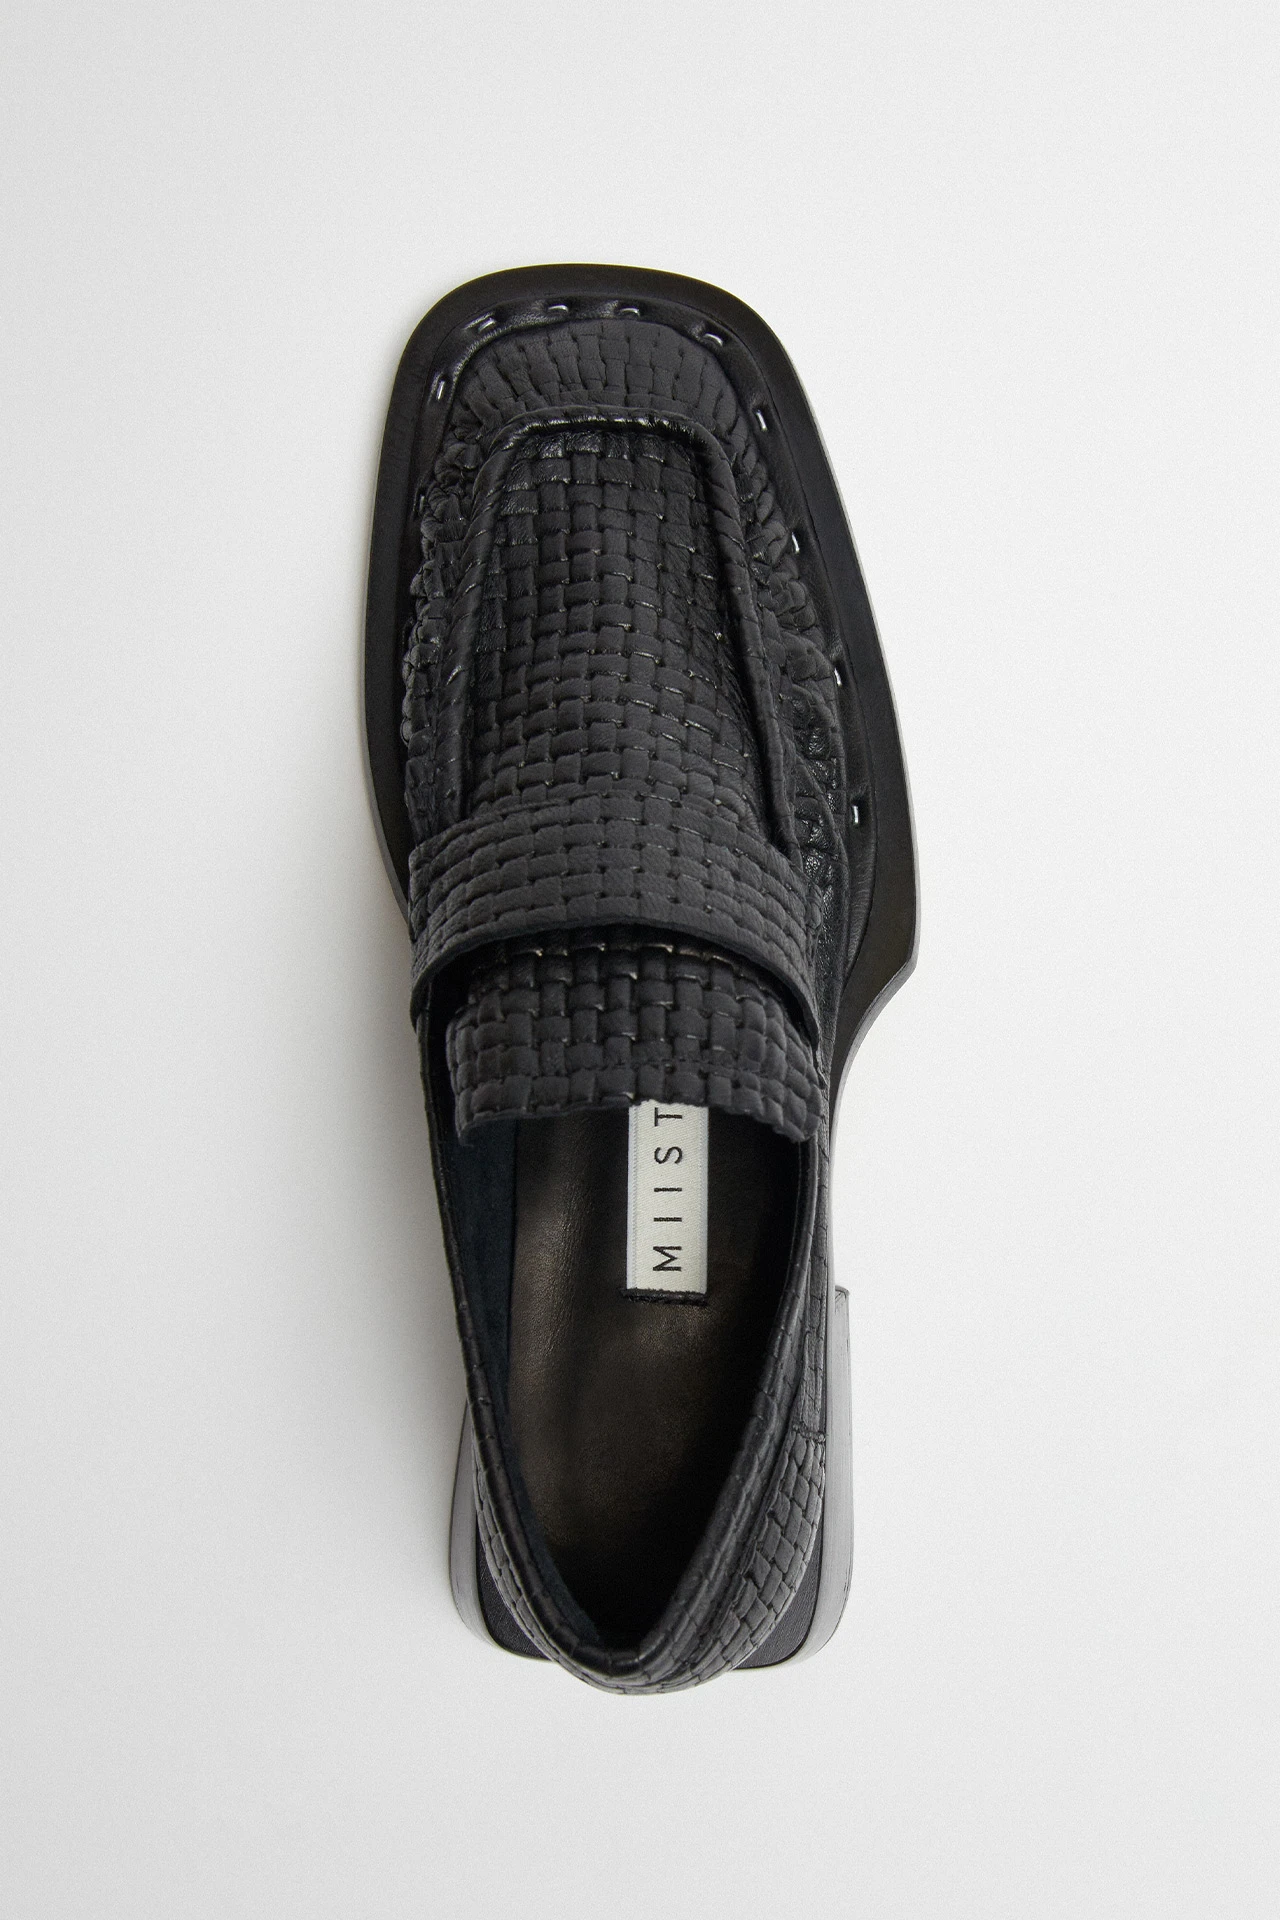 Miista-Airi-Black-Leather-Loafers-03